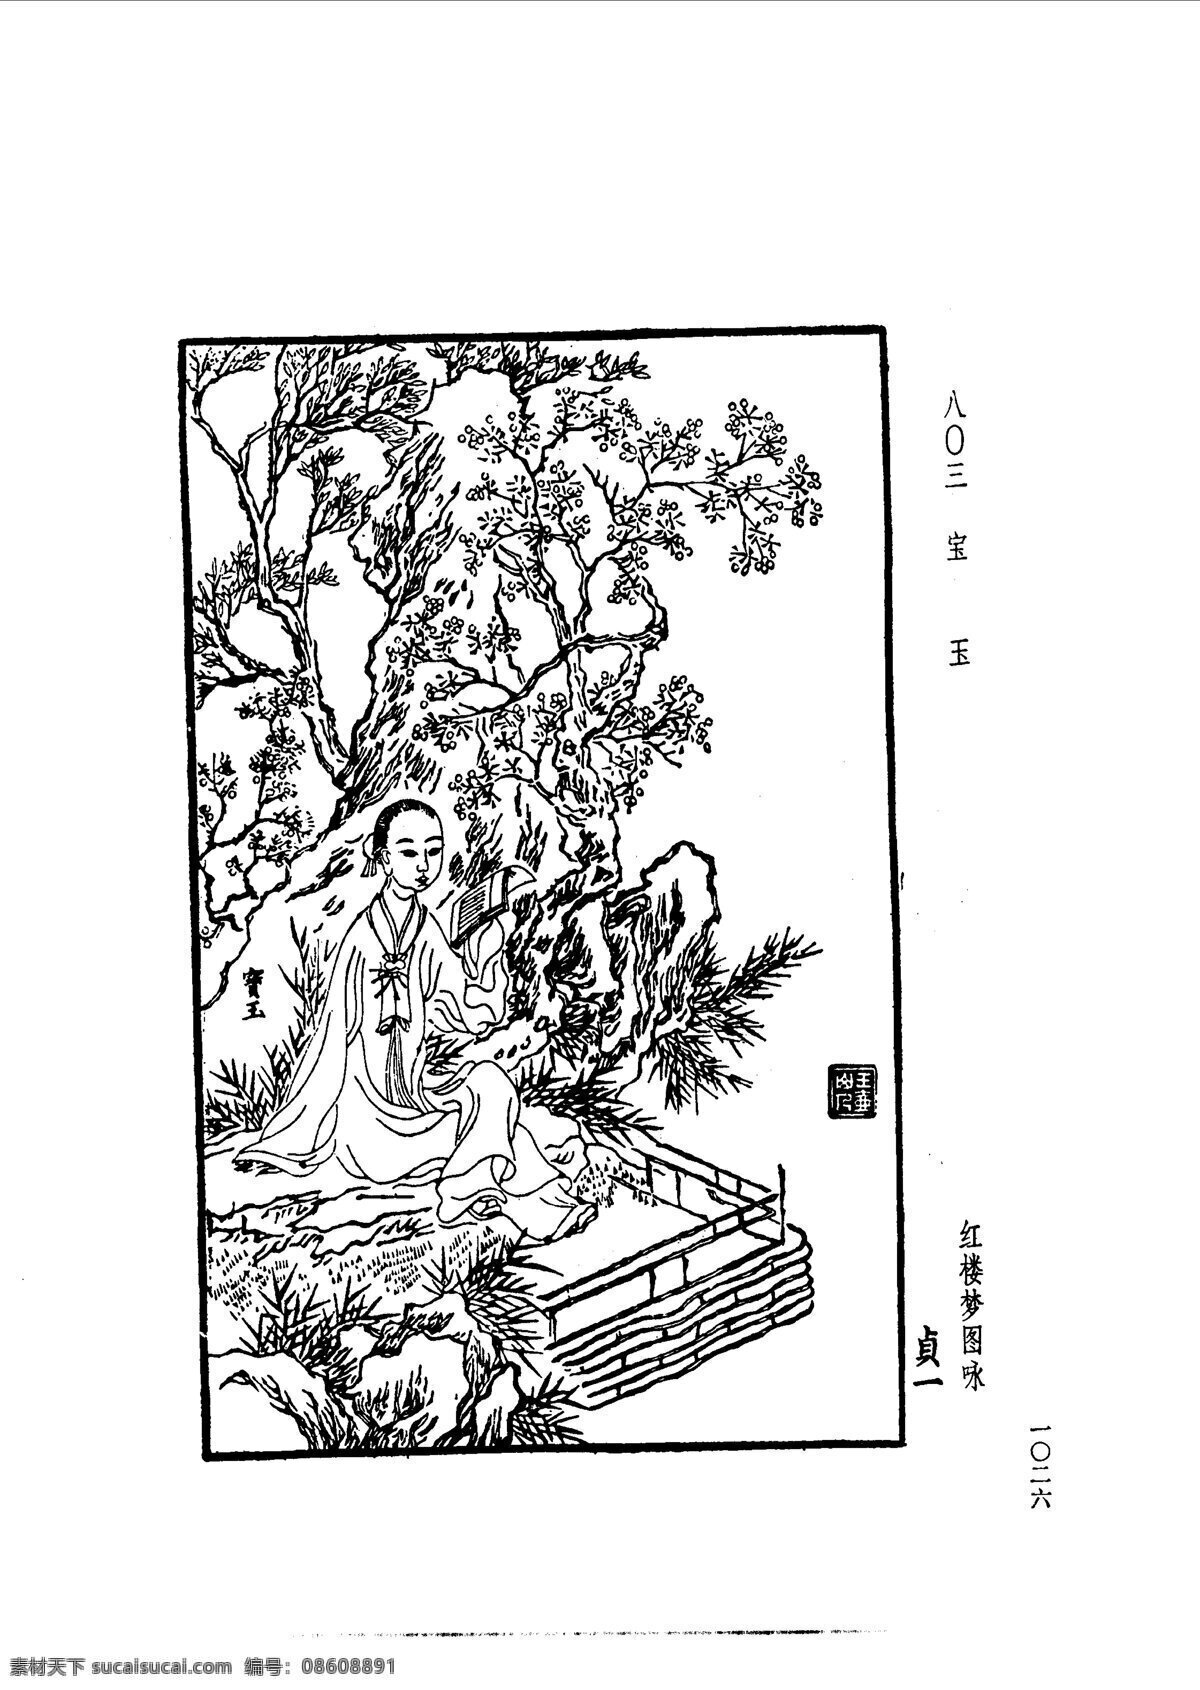 中国 古典文学 版画 选集 上 下册1054 设计素材 版画世界 书画美术 白色